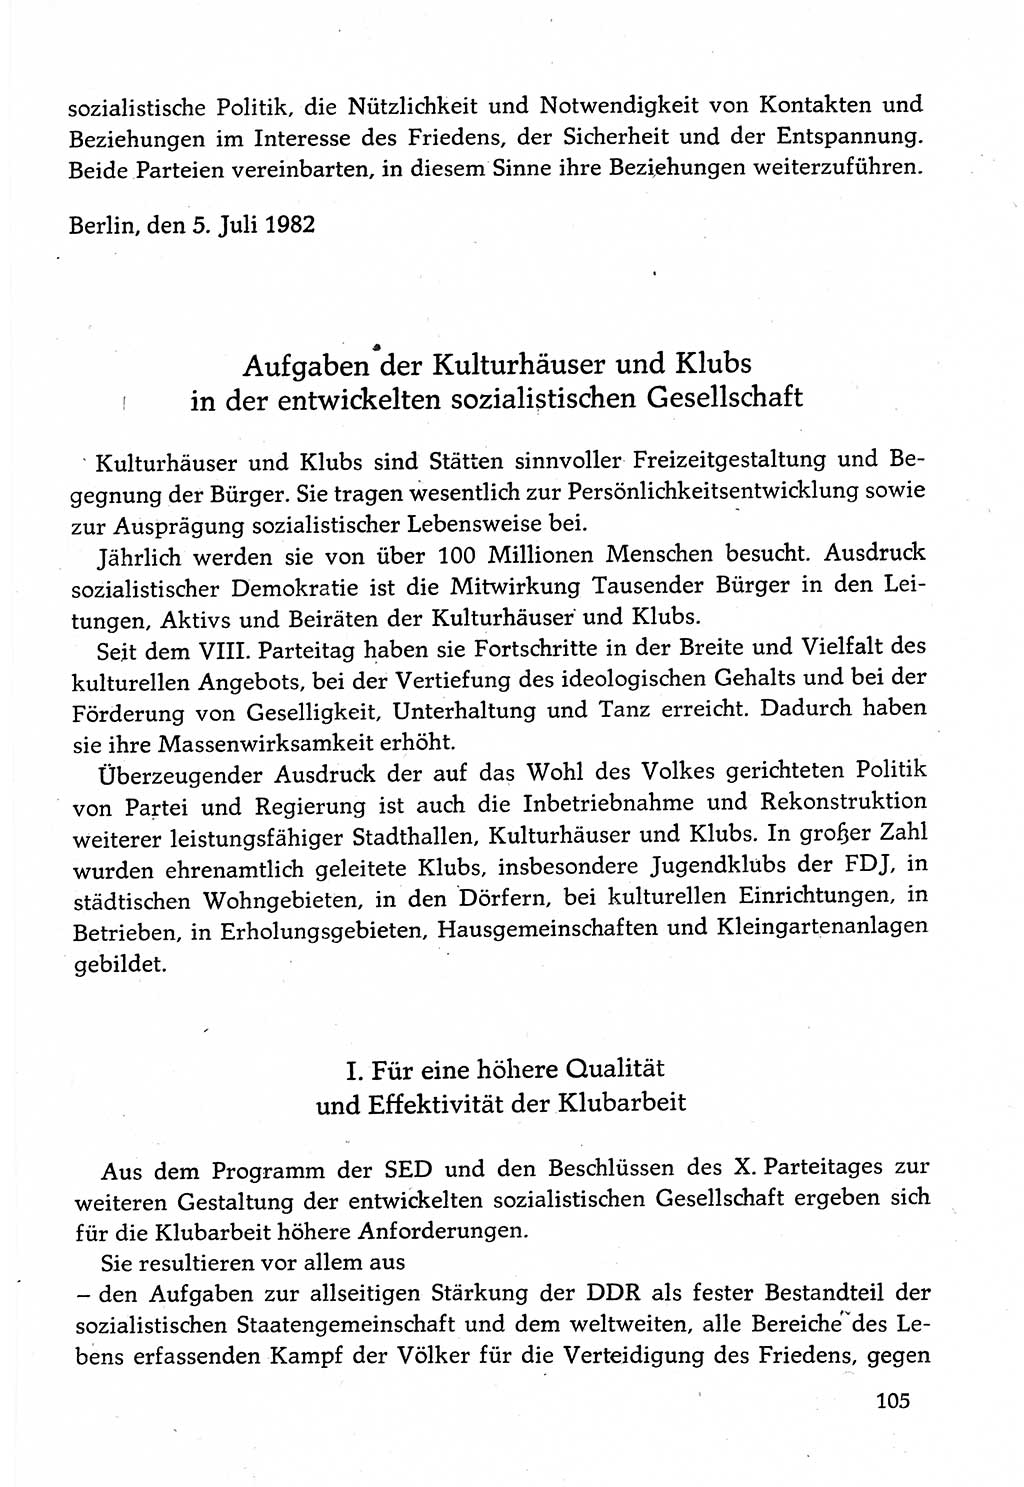 Dokumente der Sozialistischen Einheitspartei Deutschlands (SED) [Deutsche Demokratische Republik (DDR)] 1982-1983, Seite 105 (Dok. SED DDR 1982-1983, S. 105)